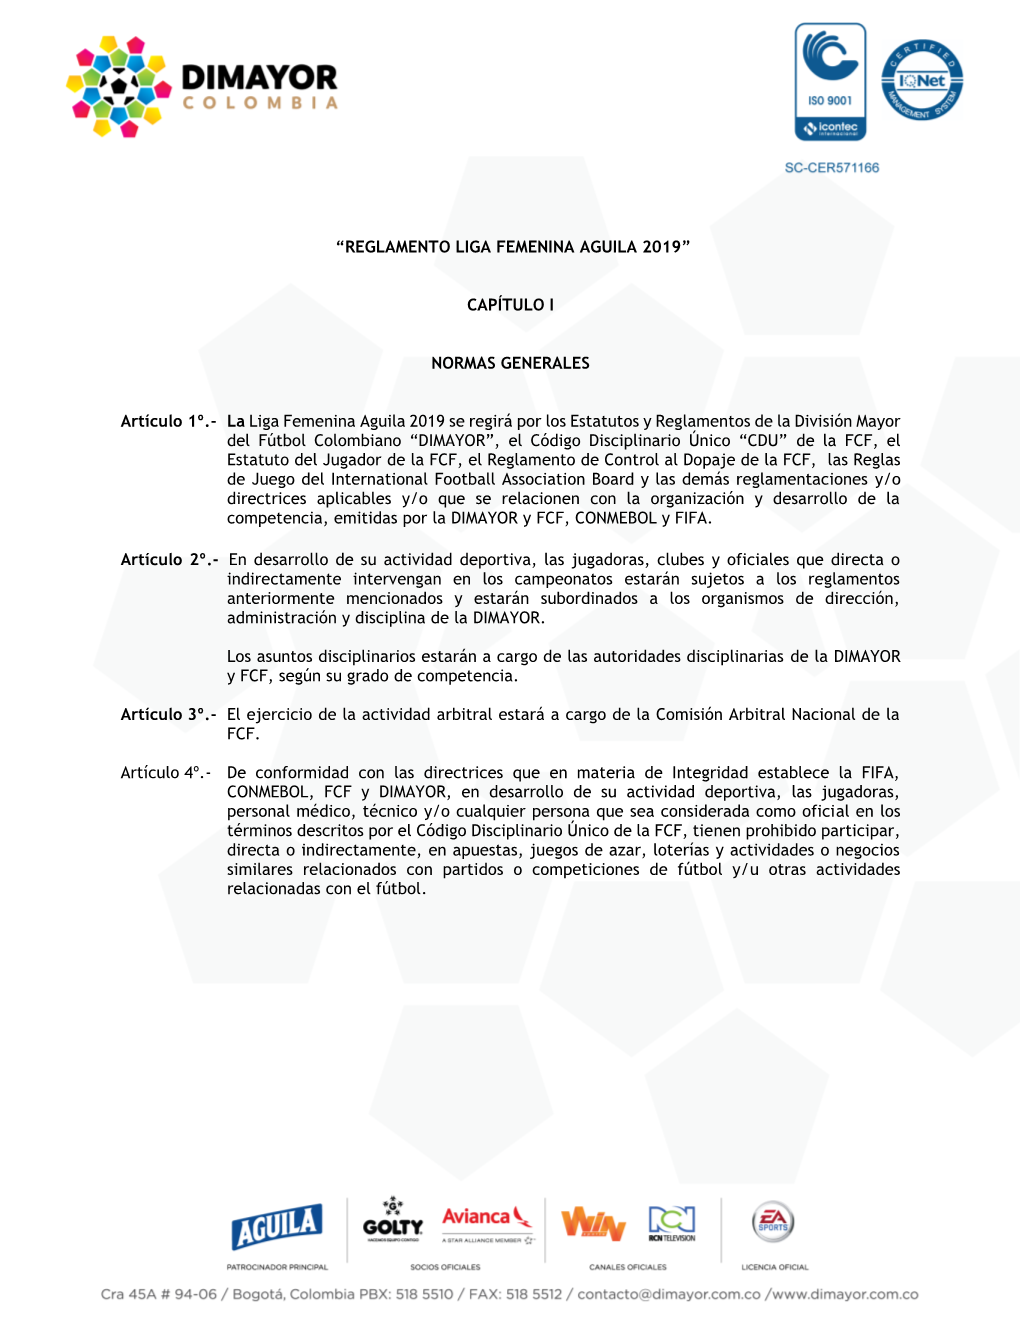 Reglamento Liga Femenina Aguila 2019”